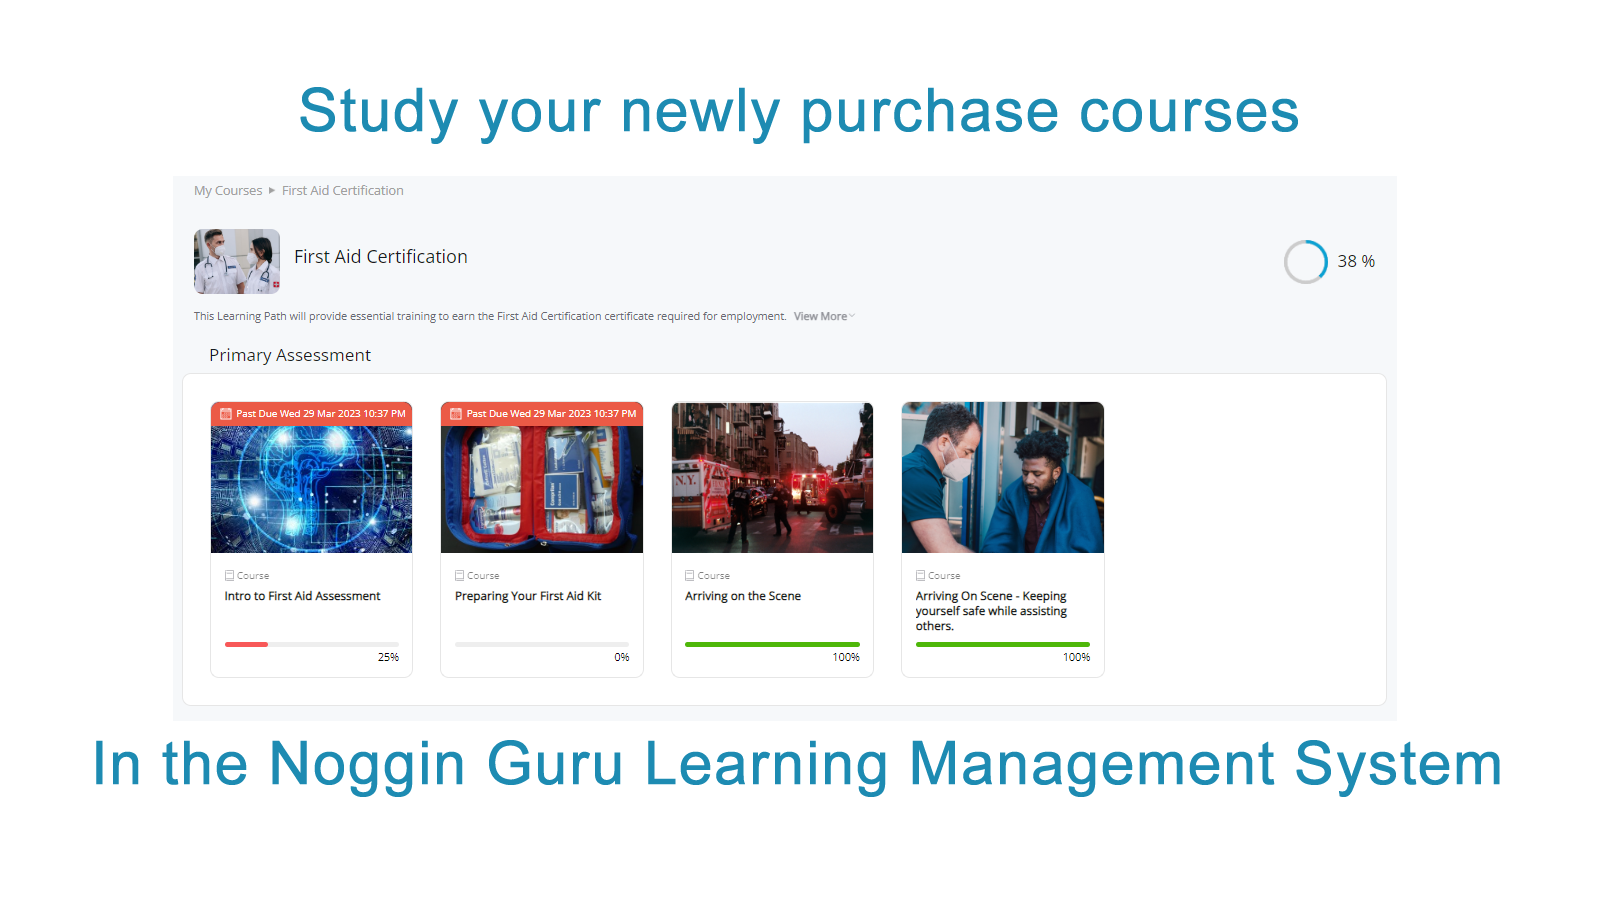 Étudiez vos cours nouvellement achetés dans le Noggin Guru LMS